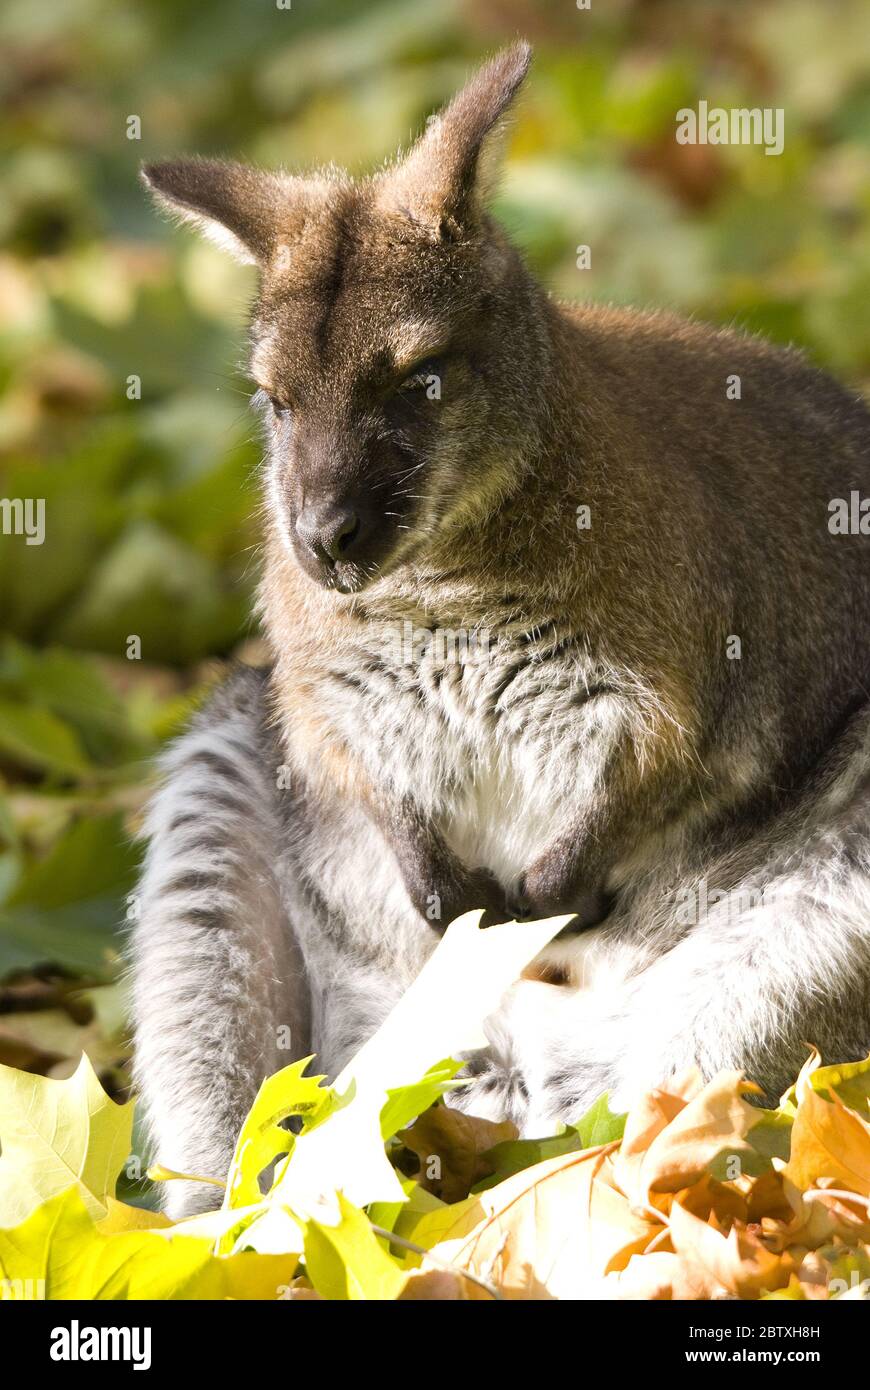 Wallaby à col rouge - Macropus rufogriseus, mammifère populaire des buissons et savanes australiennes. Banque D'Images